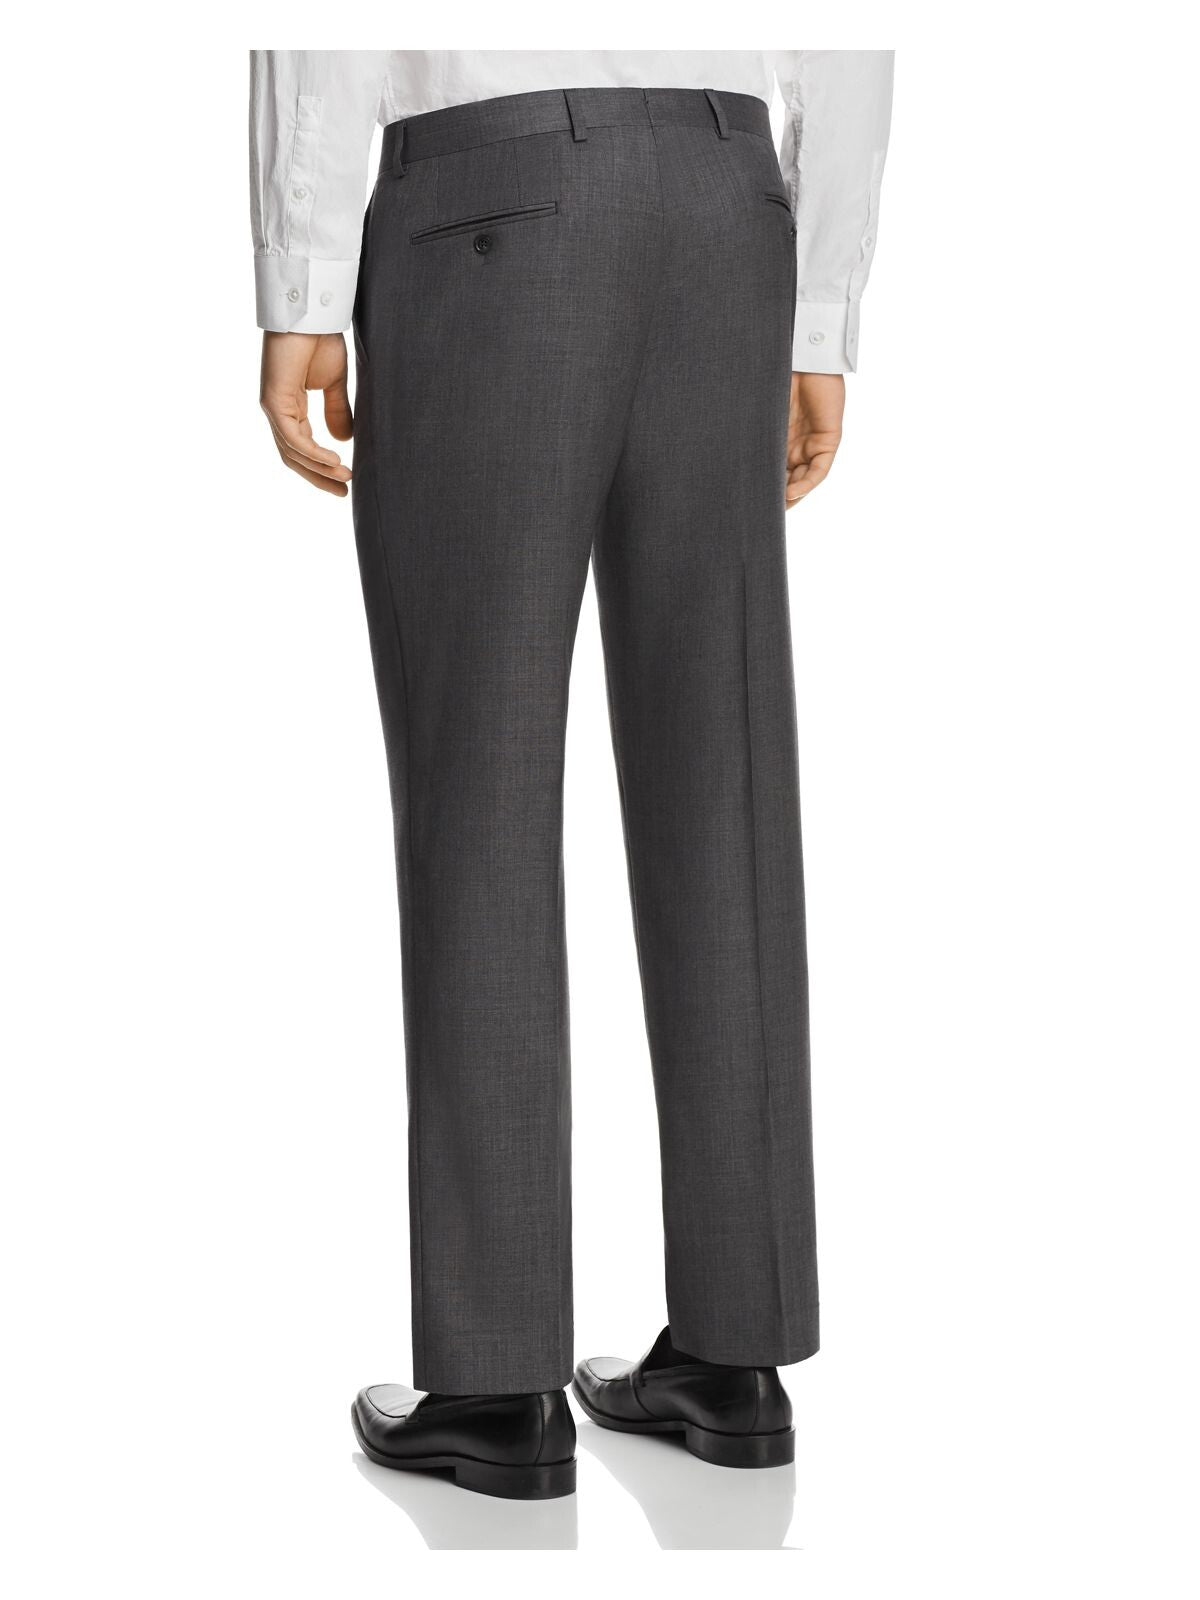 MICHAEL KORS Mens Gray Flat Front, Stretch, Classic Fit Suit Separate Pants 38W/ 30L